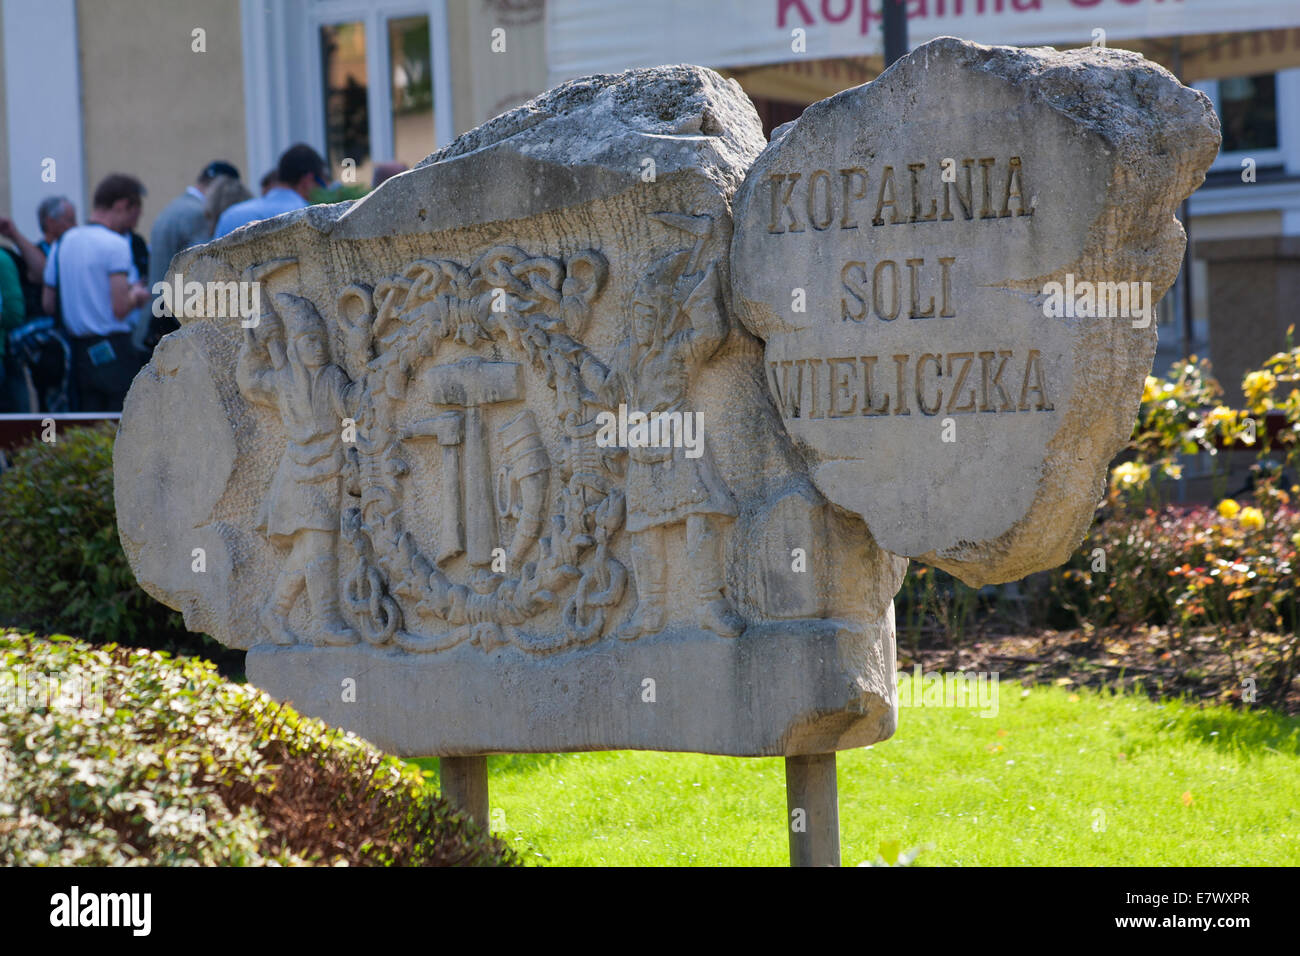 plaque by entrance to salt mine at Wieliczka, Poland - salt mine near Krakow Stock Photo